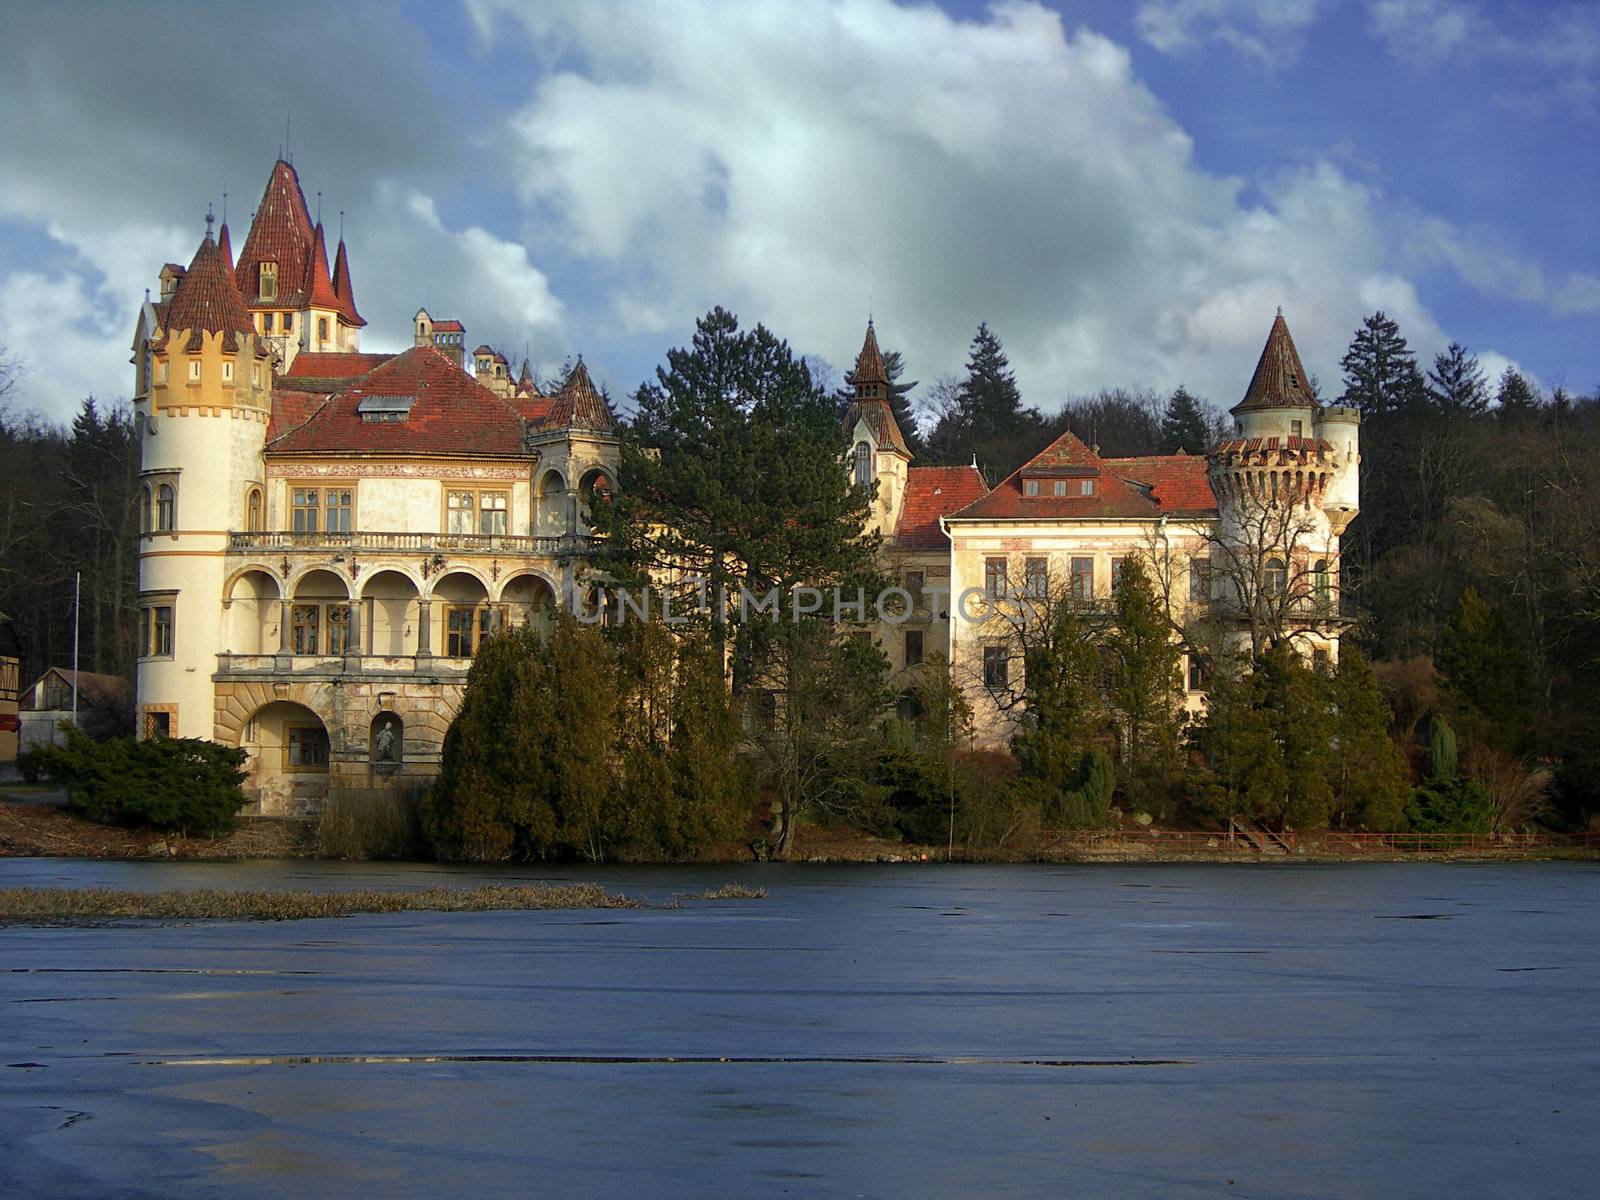 Romantic castle by drakodav